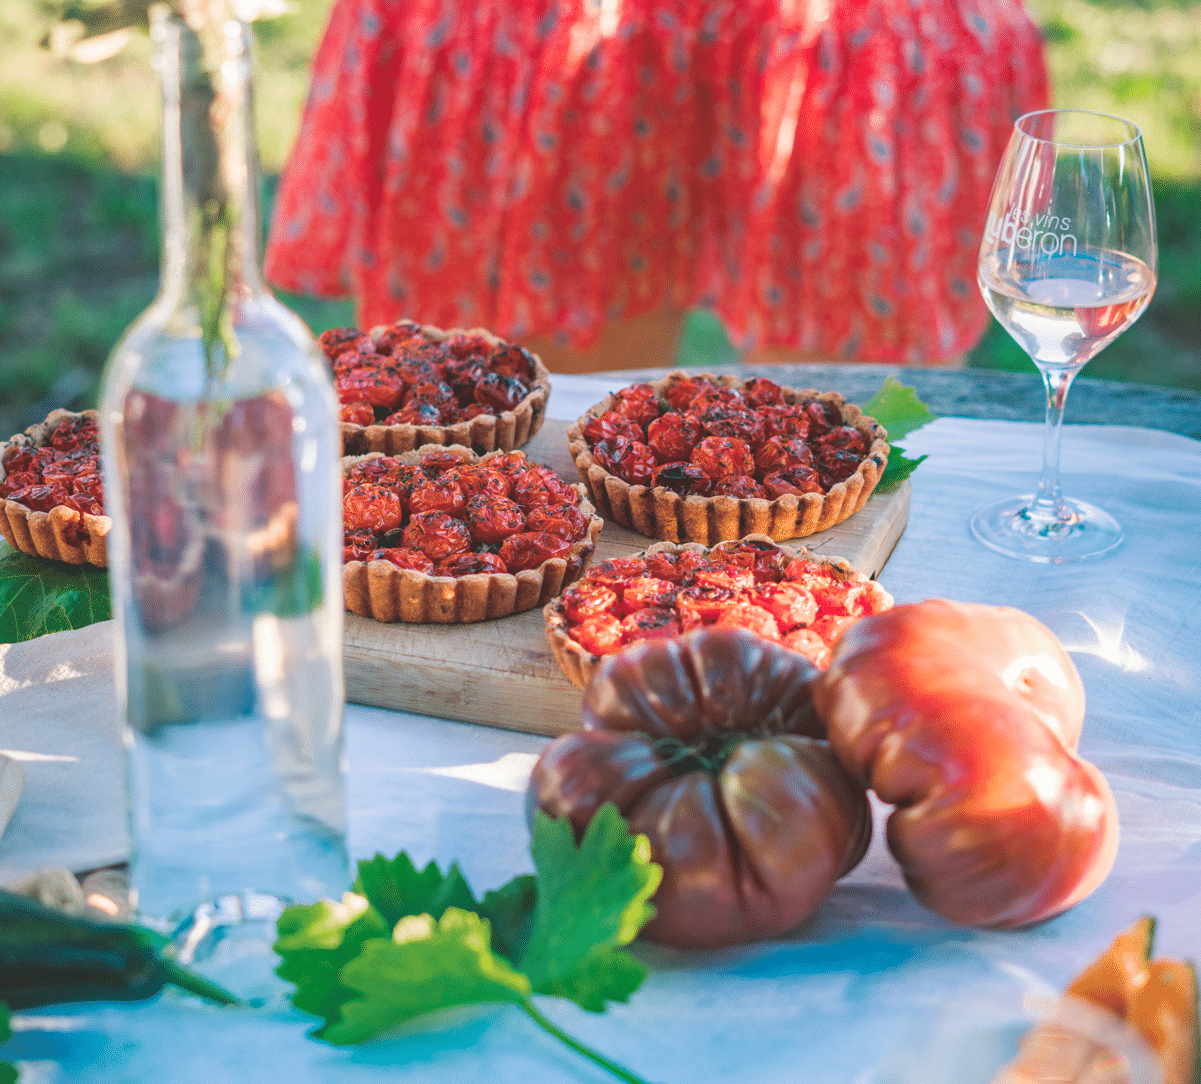 Découverte de la gastronomie et du vin du Luberon accompagné des vignerons qui font découvrir leur domaine et leurs vignes